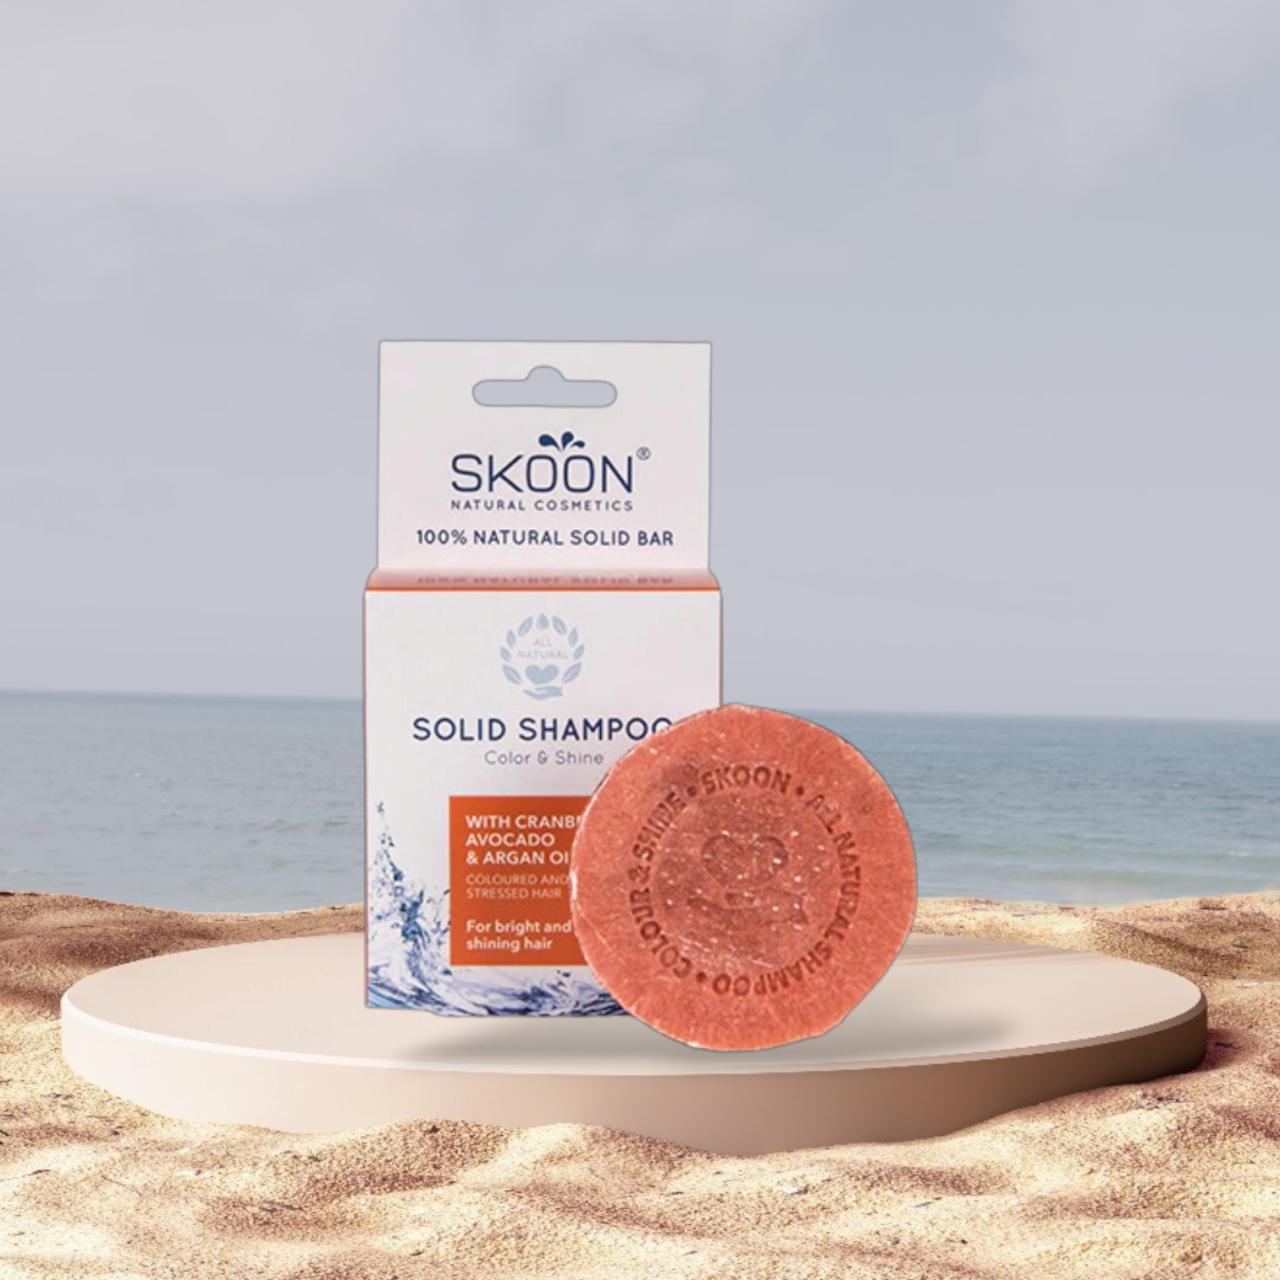 Skoon shampoo bar - Color & Shine i en velvære æske på stranden.